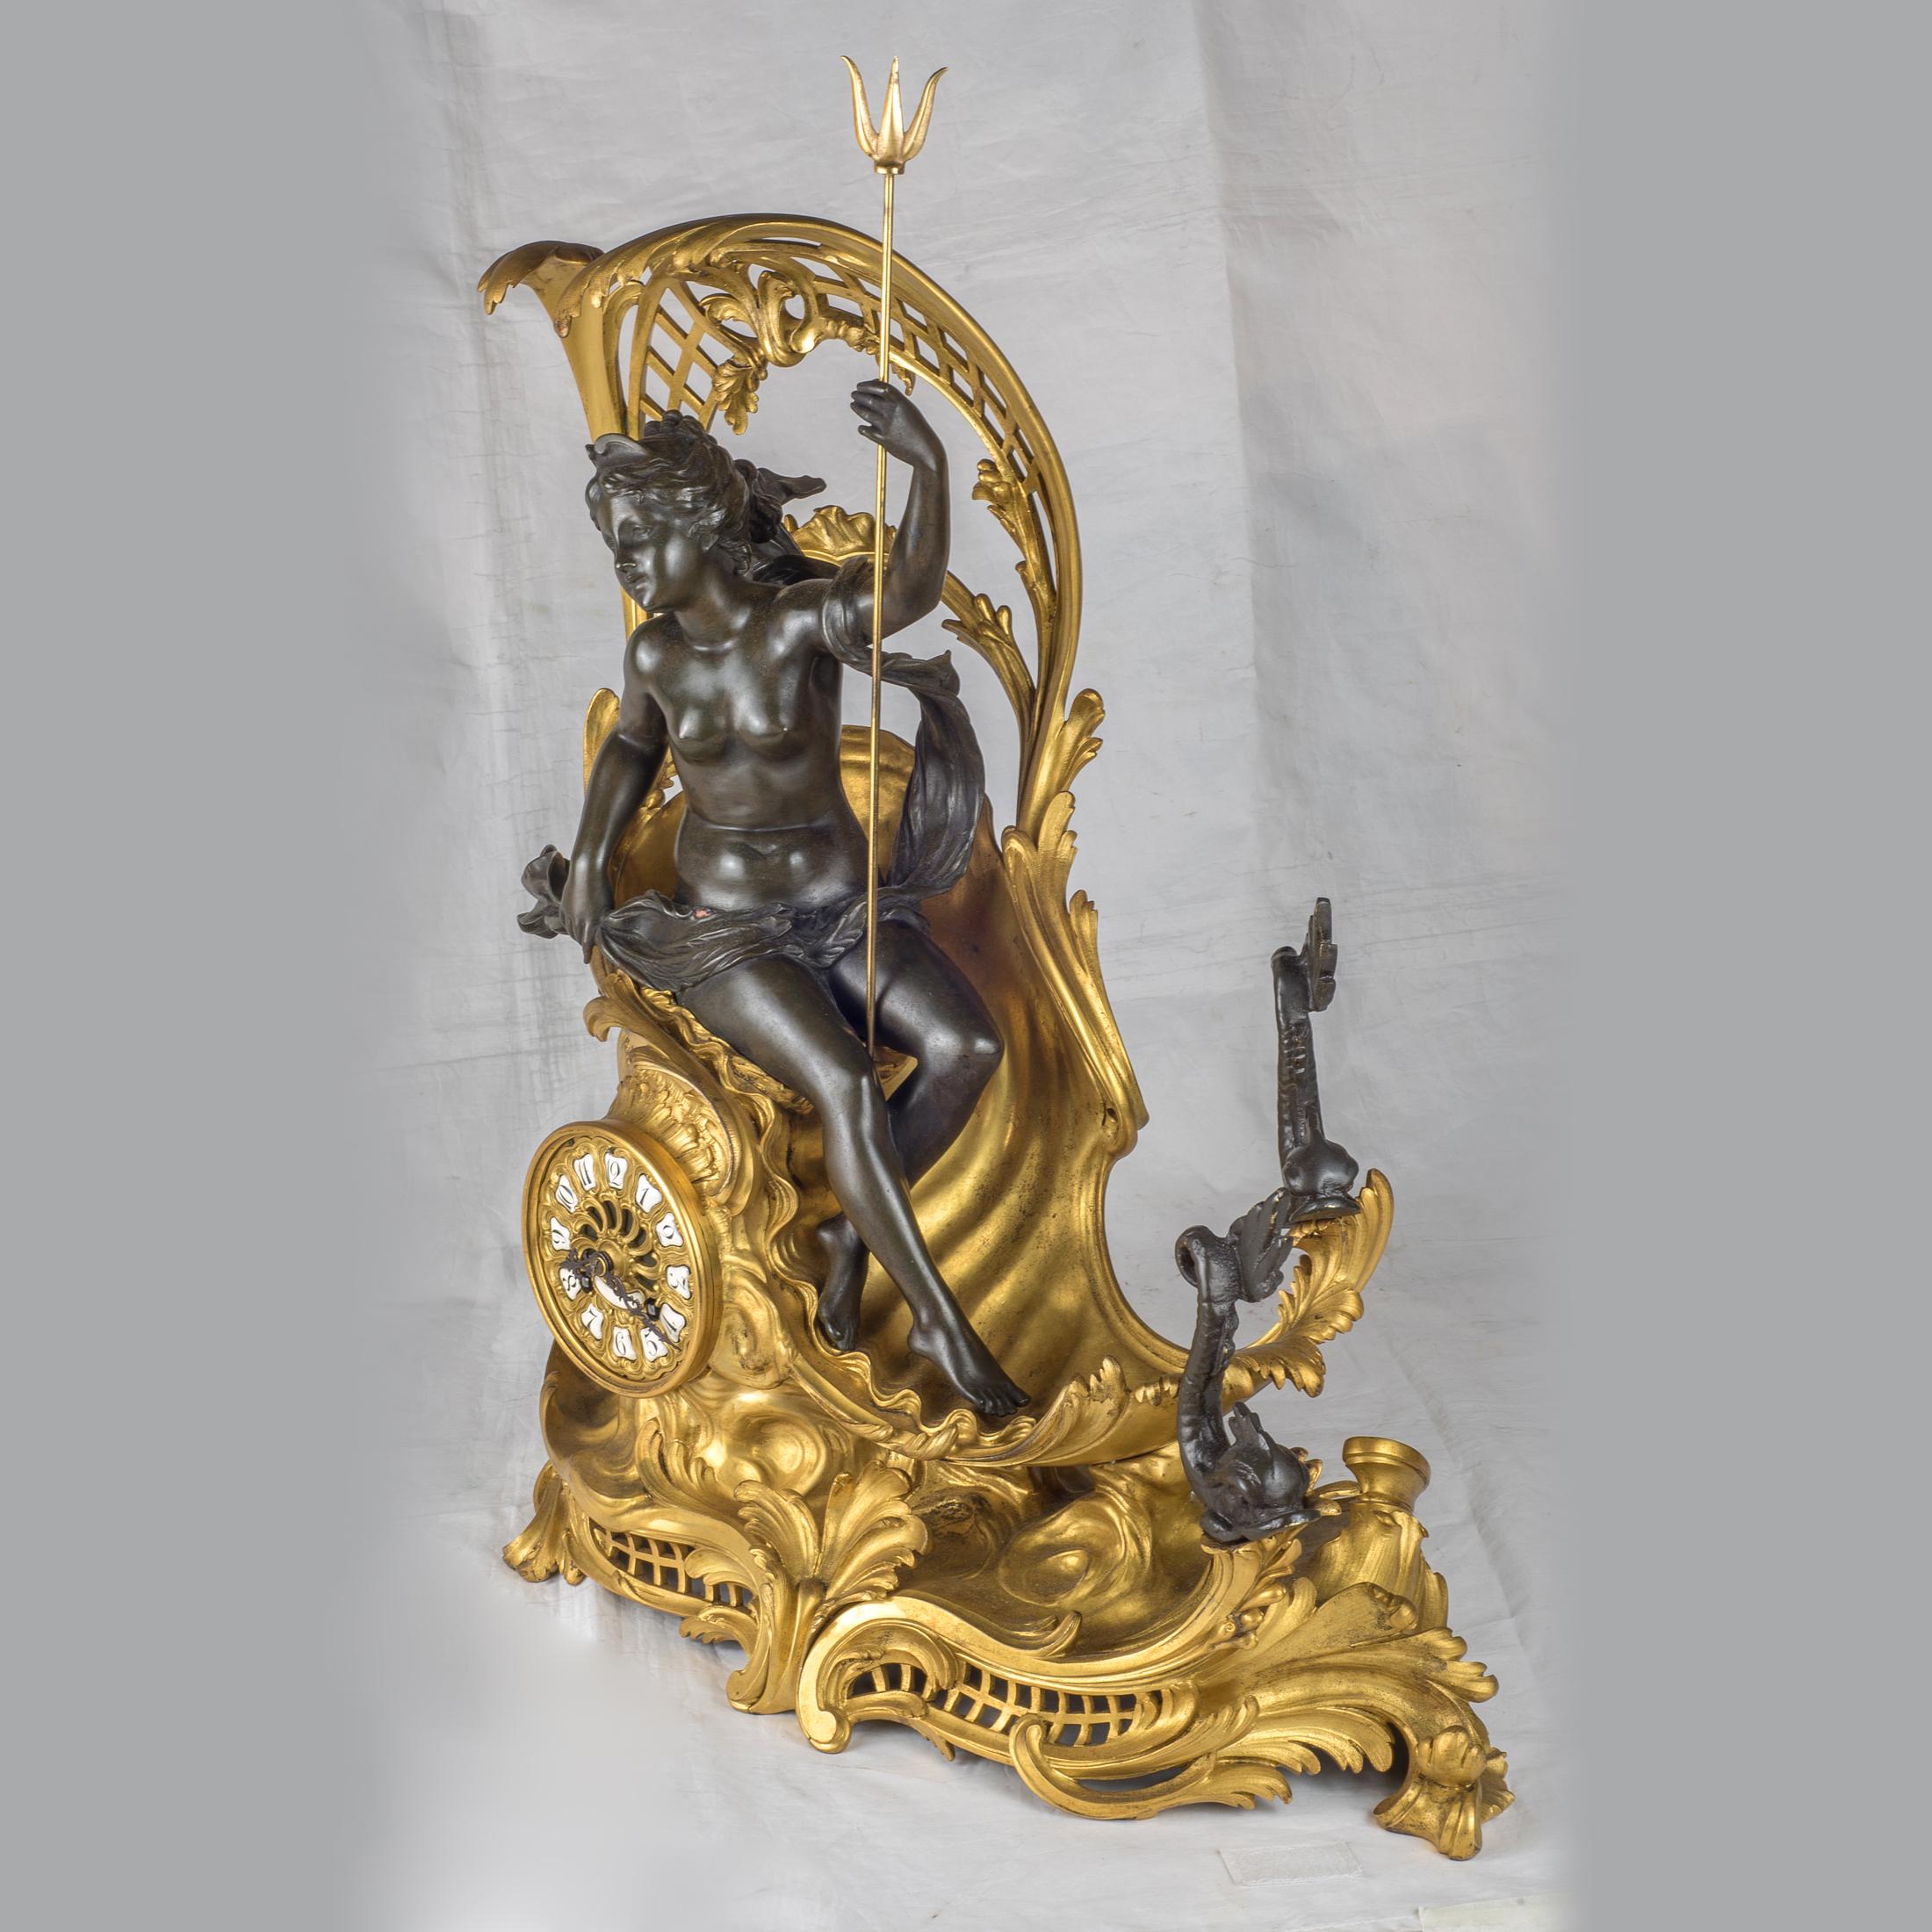 Vergoldete und patinierte Bronze-Manteluhr, die den von Delphinen gezogenen Wagen der Amphitrite darstellt, zugeschrieben F. Like.

Herkunft: Französisch
Datum: 19. Jahrhundert
Abmessungen: 21 x 18 x 8 Zoll.